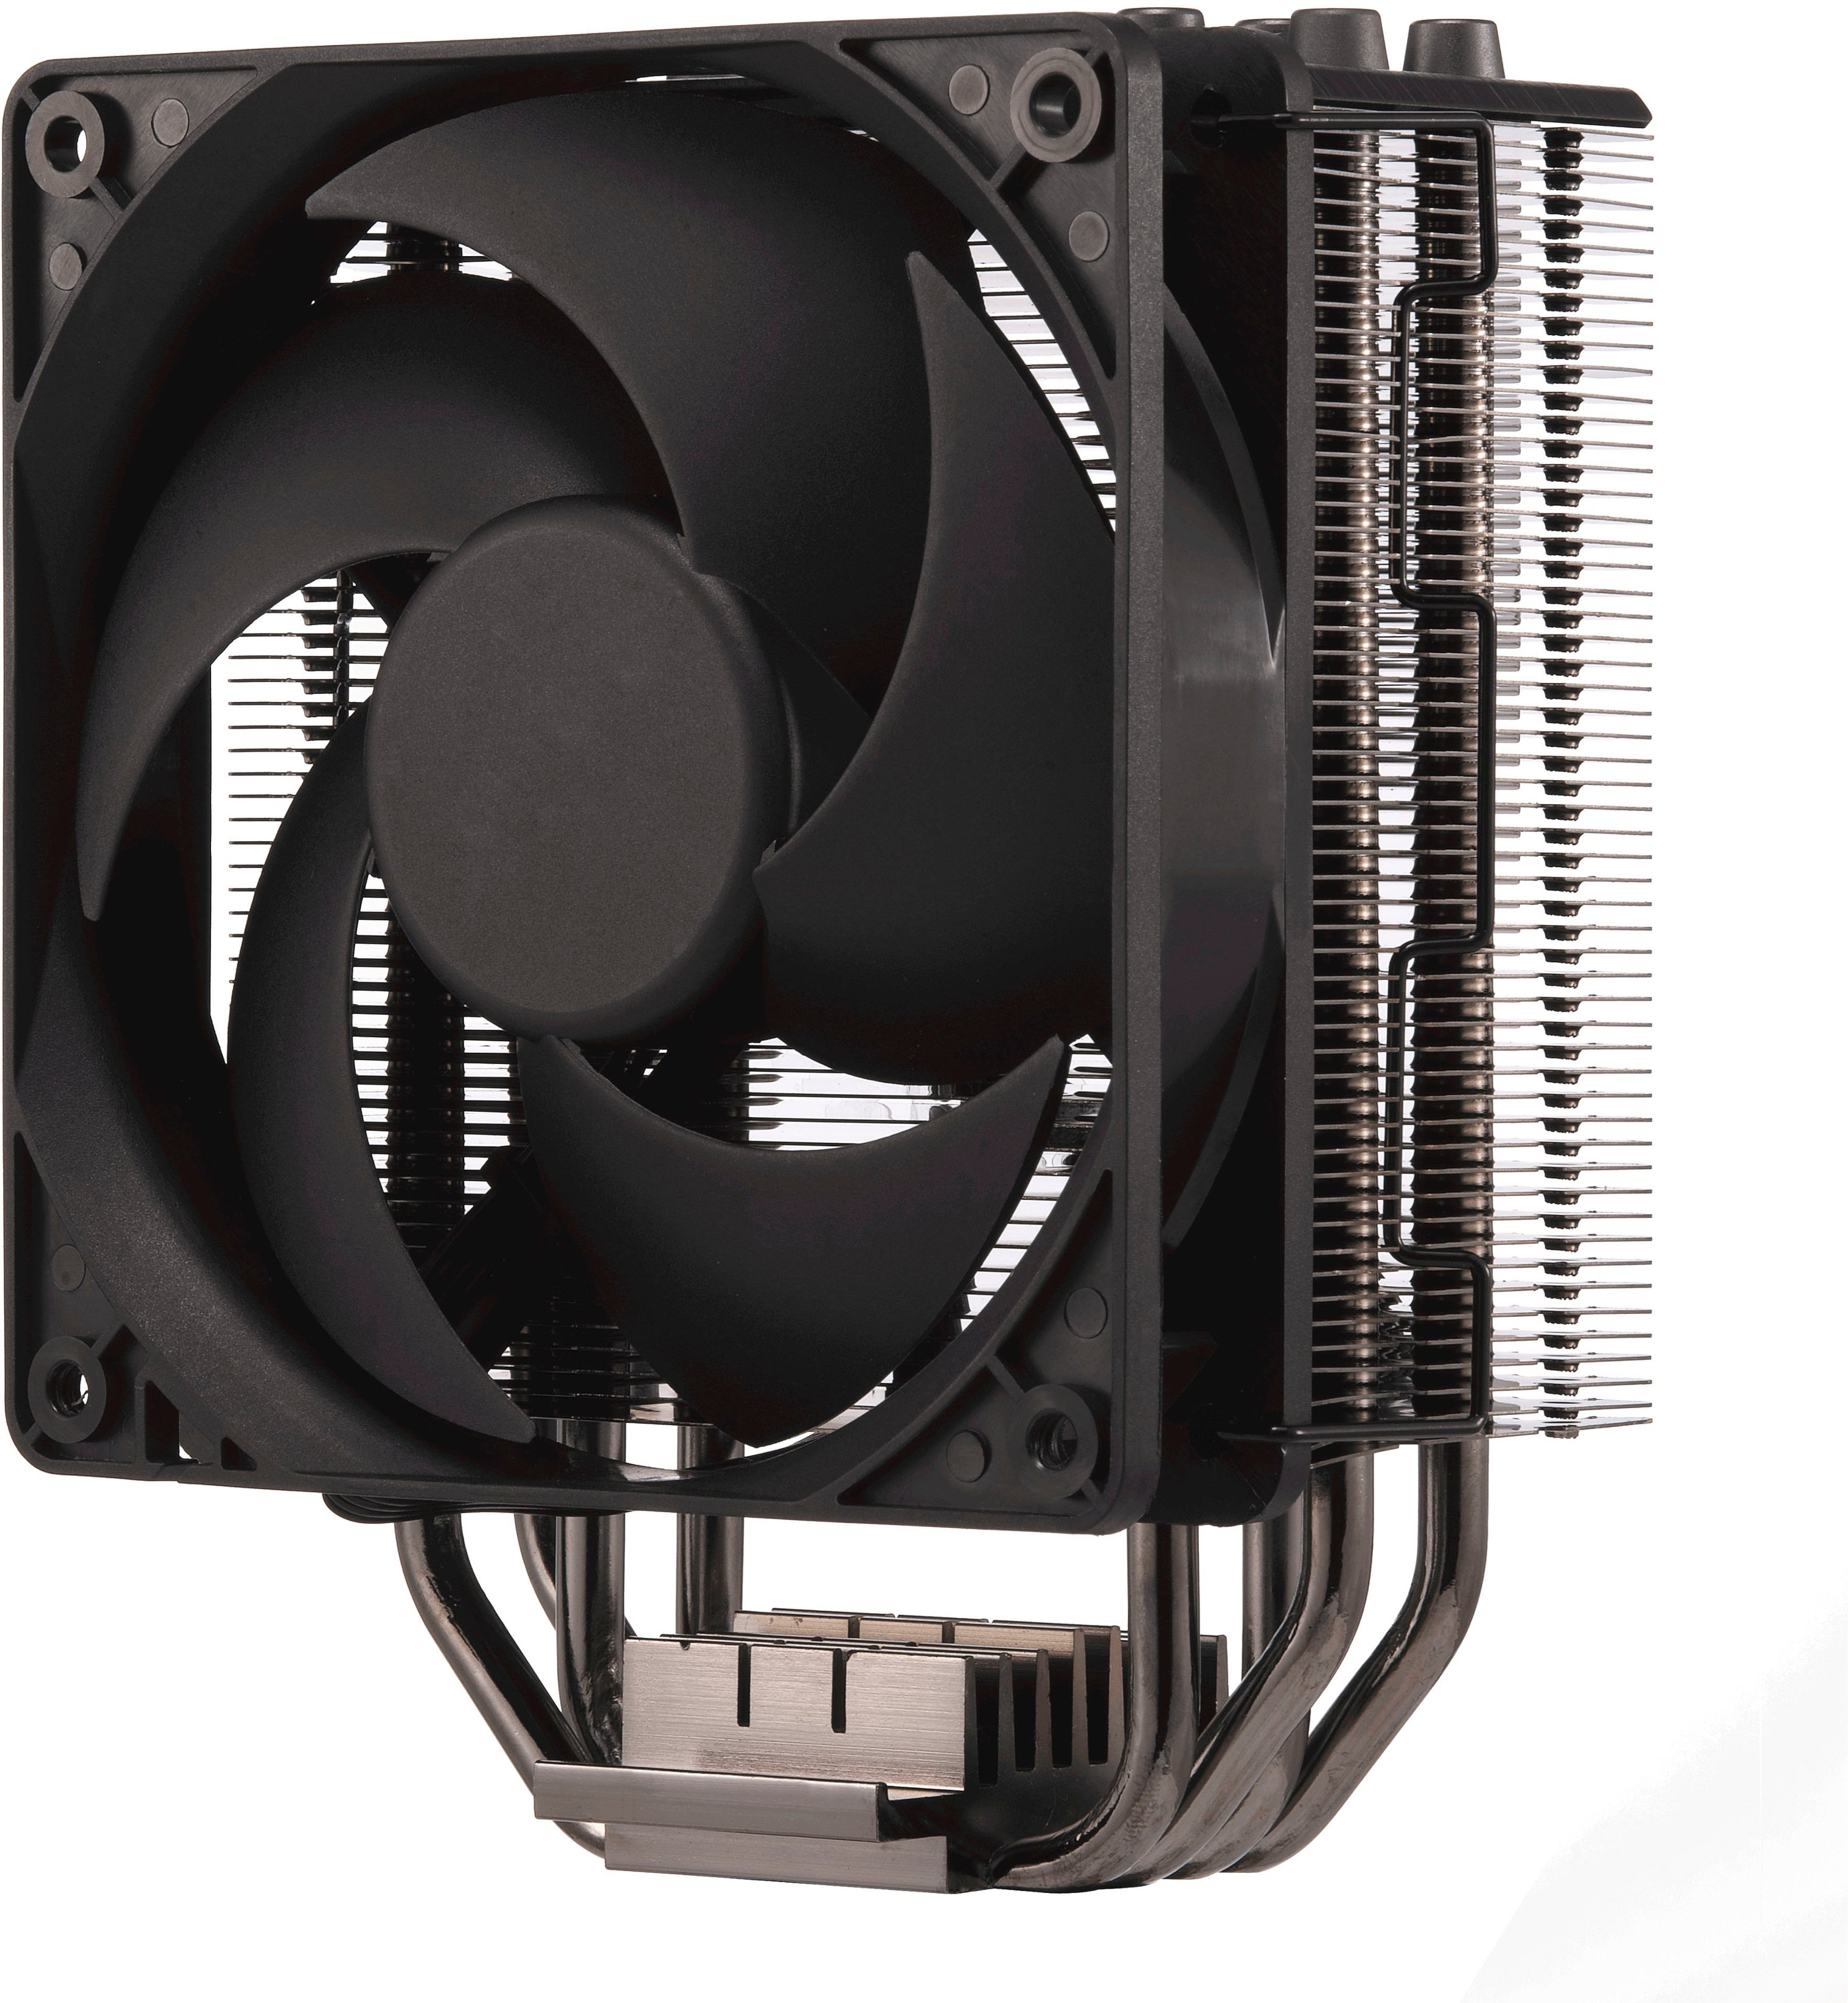 Cooler Master Hyper 212 RGB Black Edition 120mm CPU Cooling Fan Jet Black  RR212S20PKR2 - Best Buy